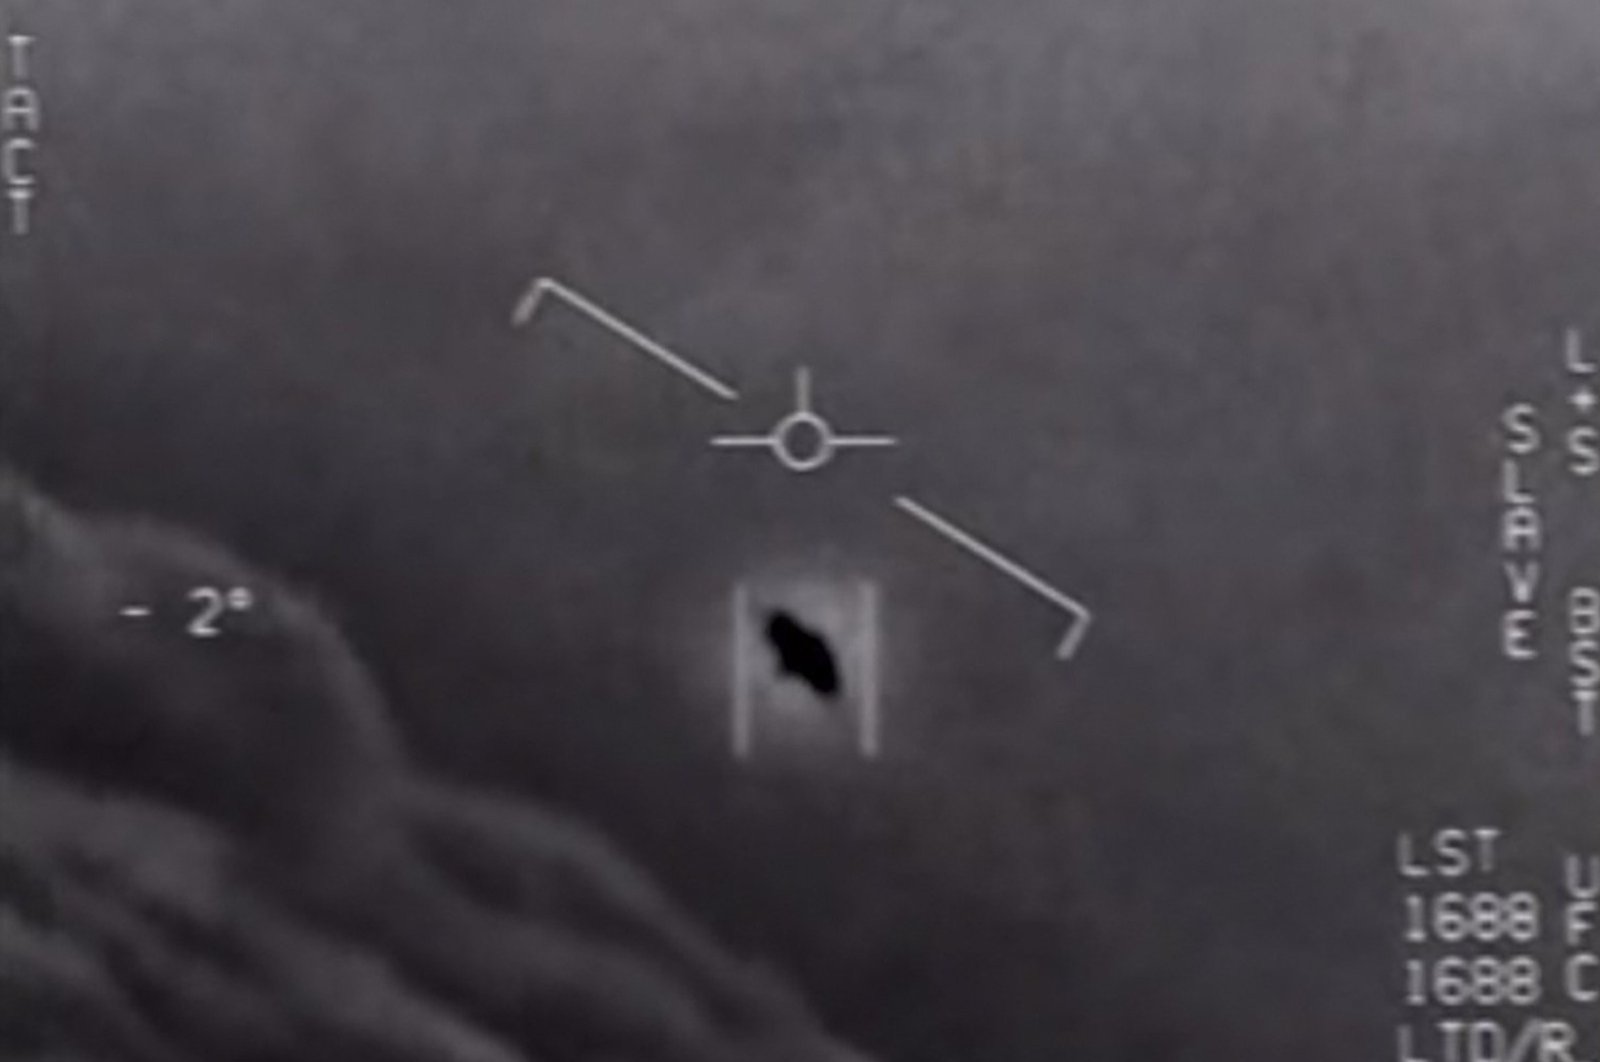 Melepaskan rekaman UFO rahasia akan berbahaya: Angkatan Laut AS